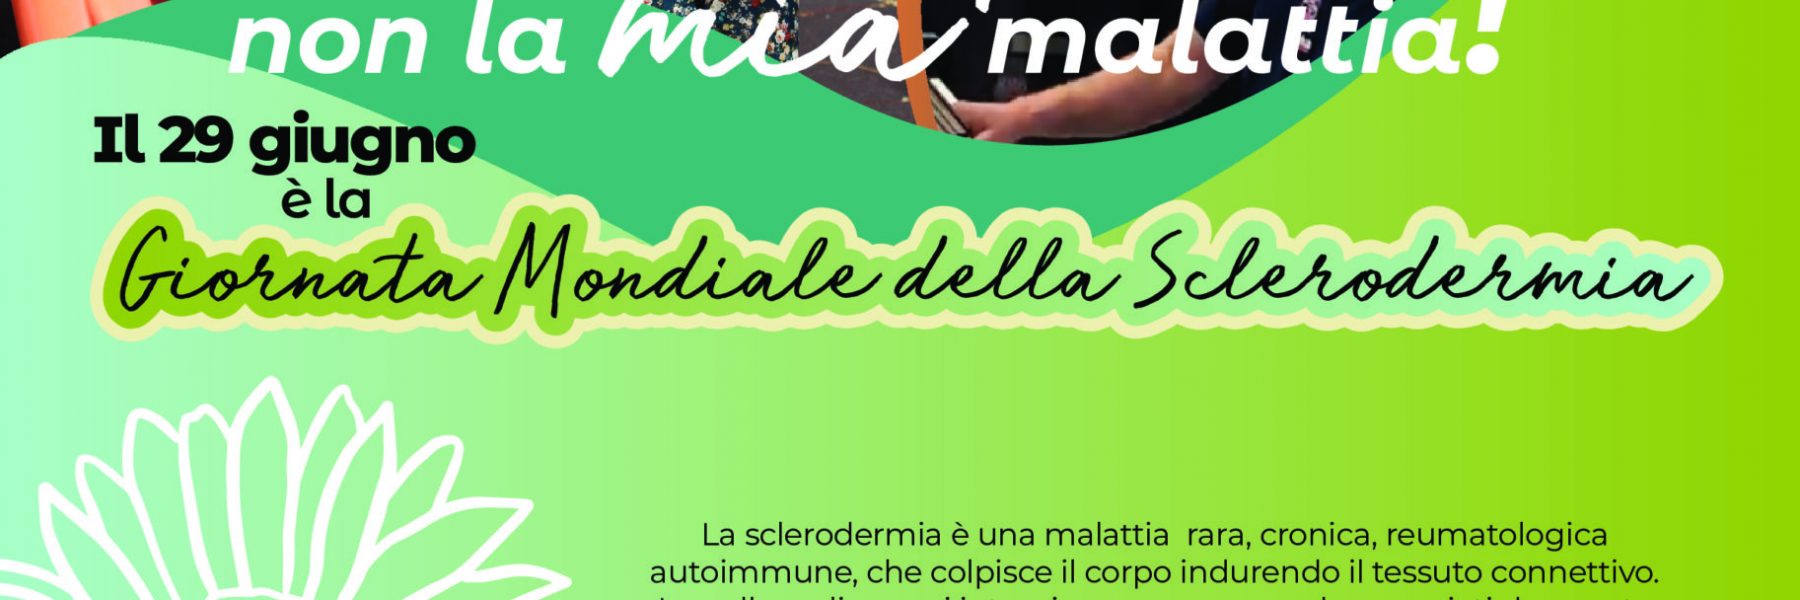 Campagna FESCA Giornata Mondiale della Sclerodermia